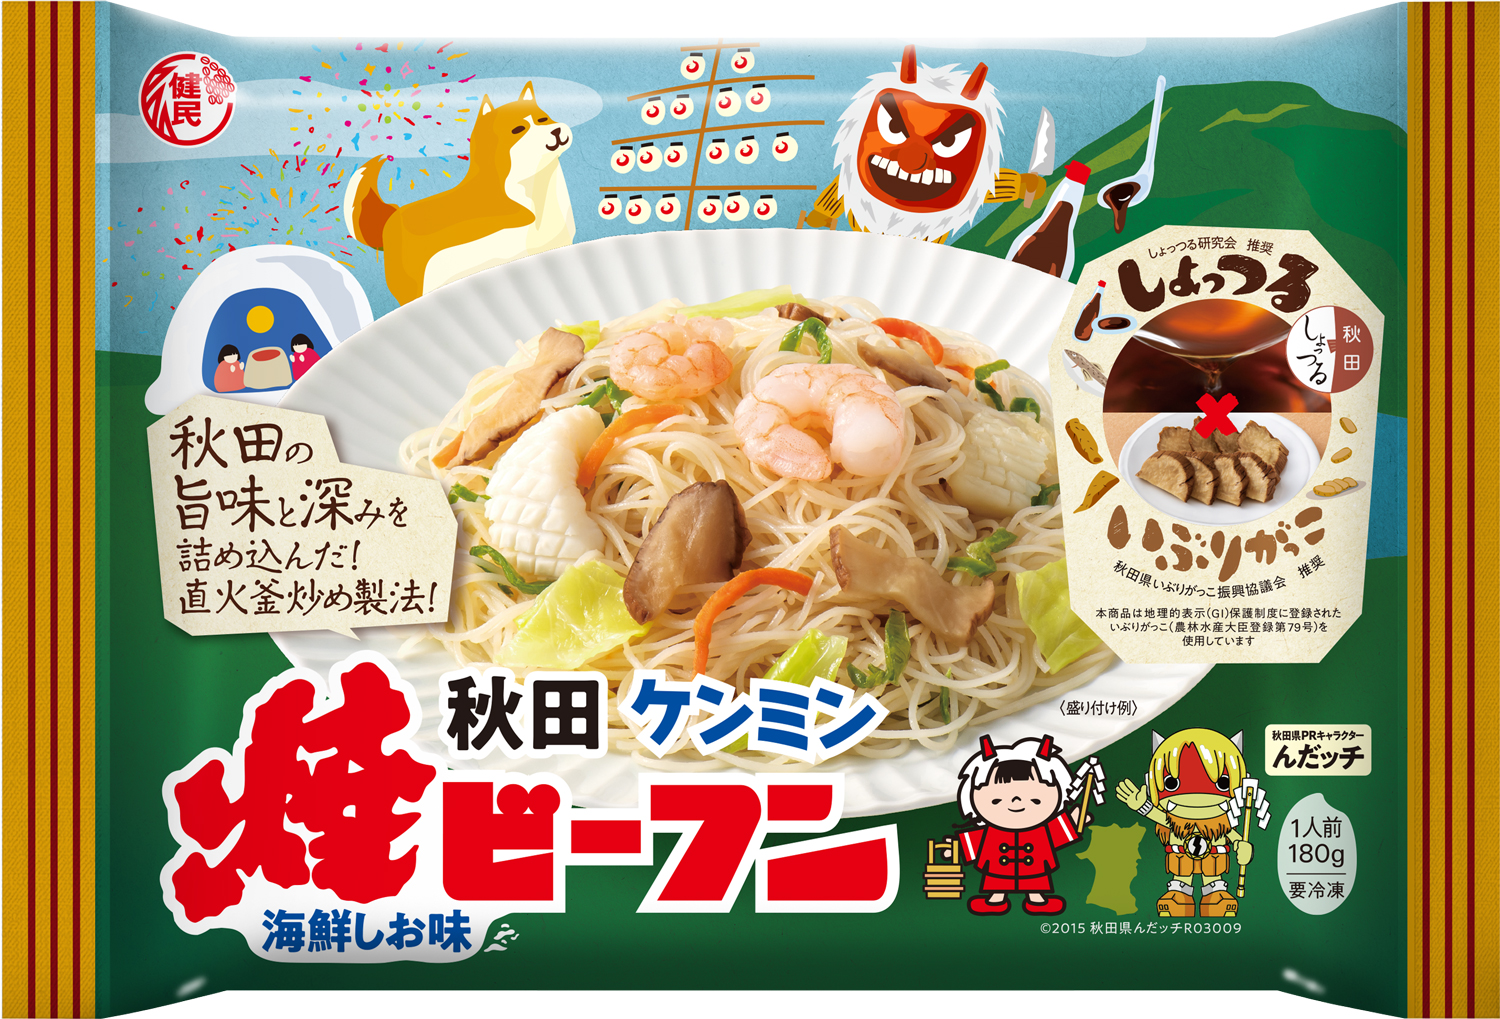 ●ケンミンが「秋田ケンミン焼ビーフン」を数量限定販売！